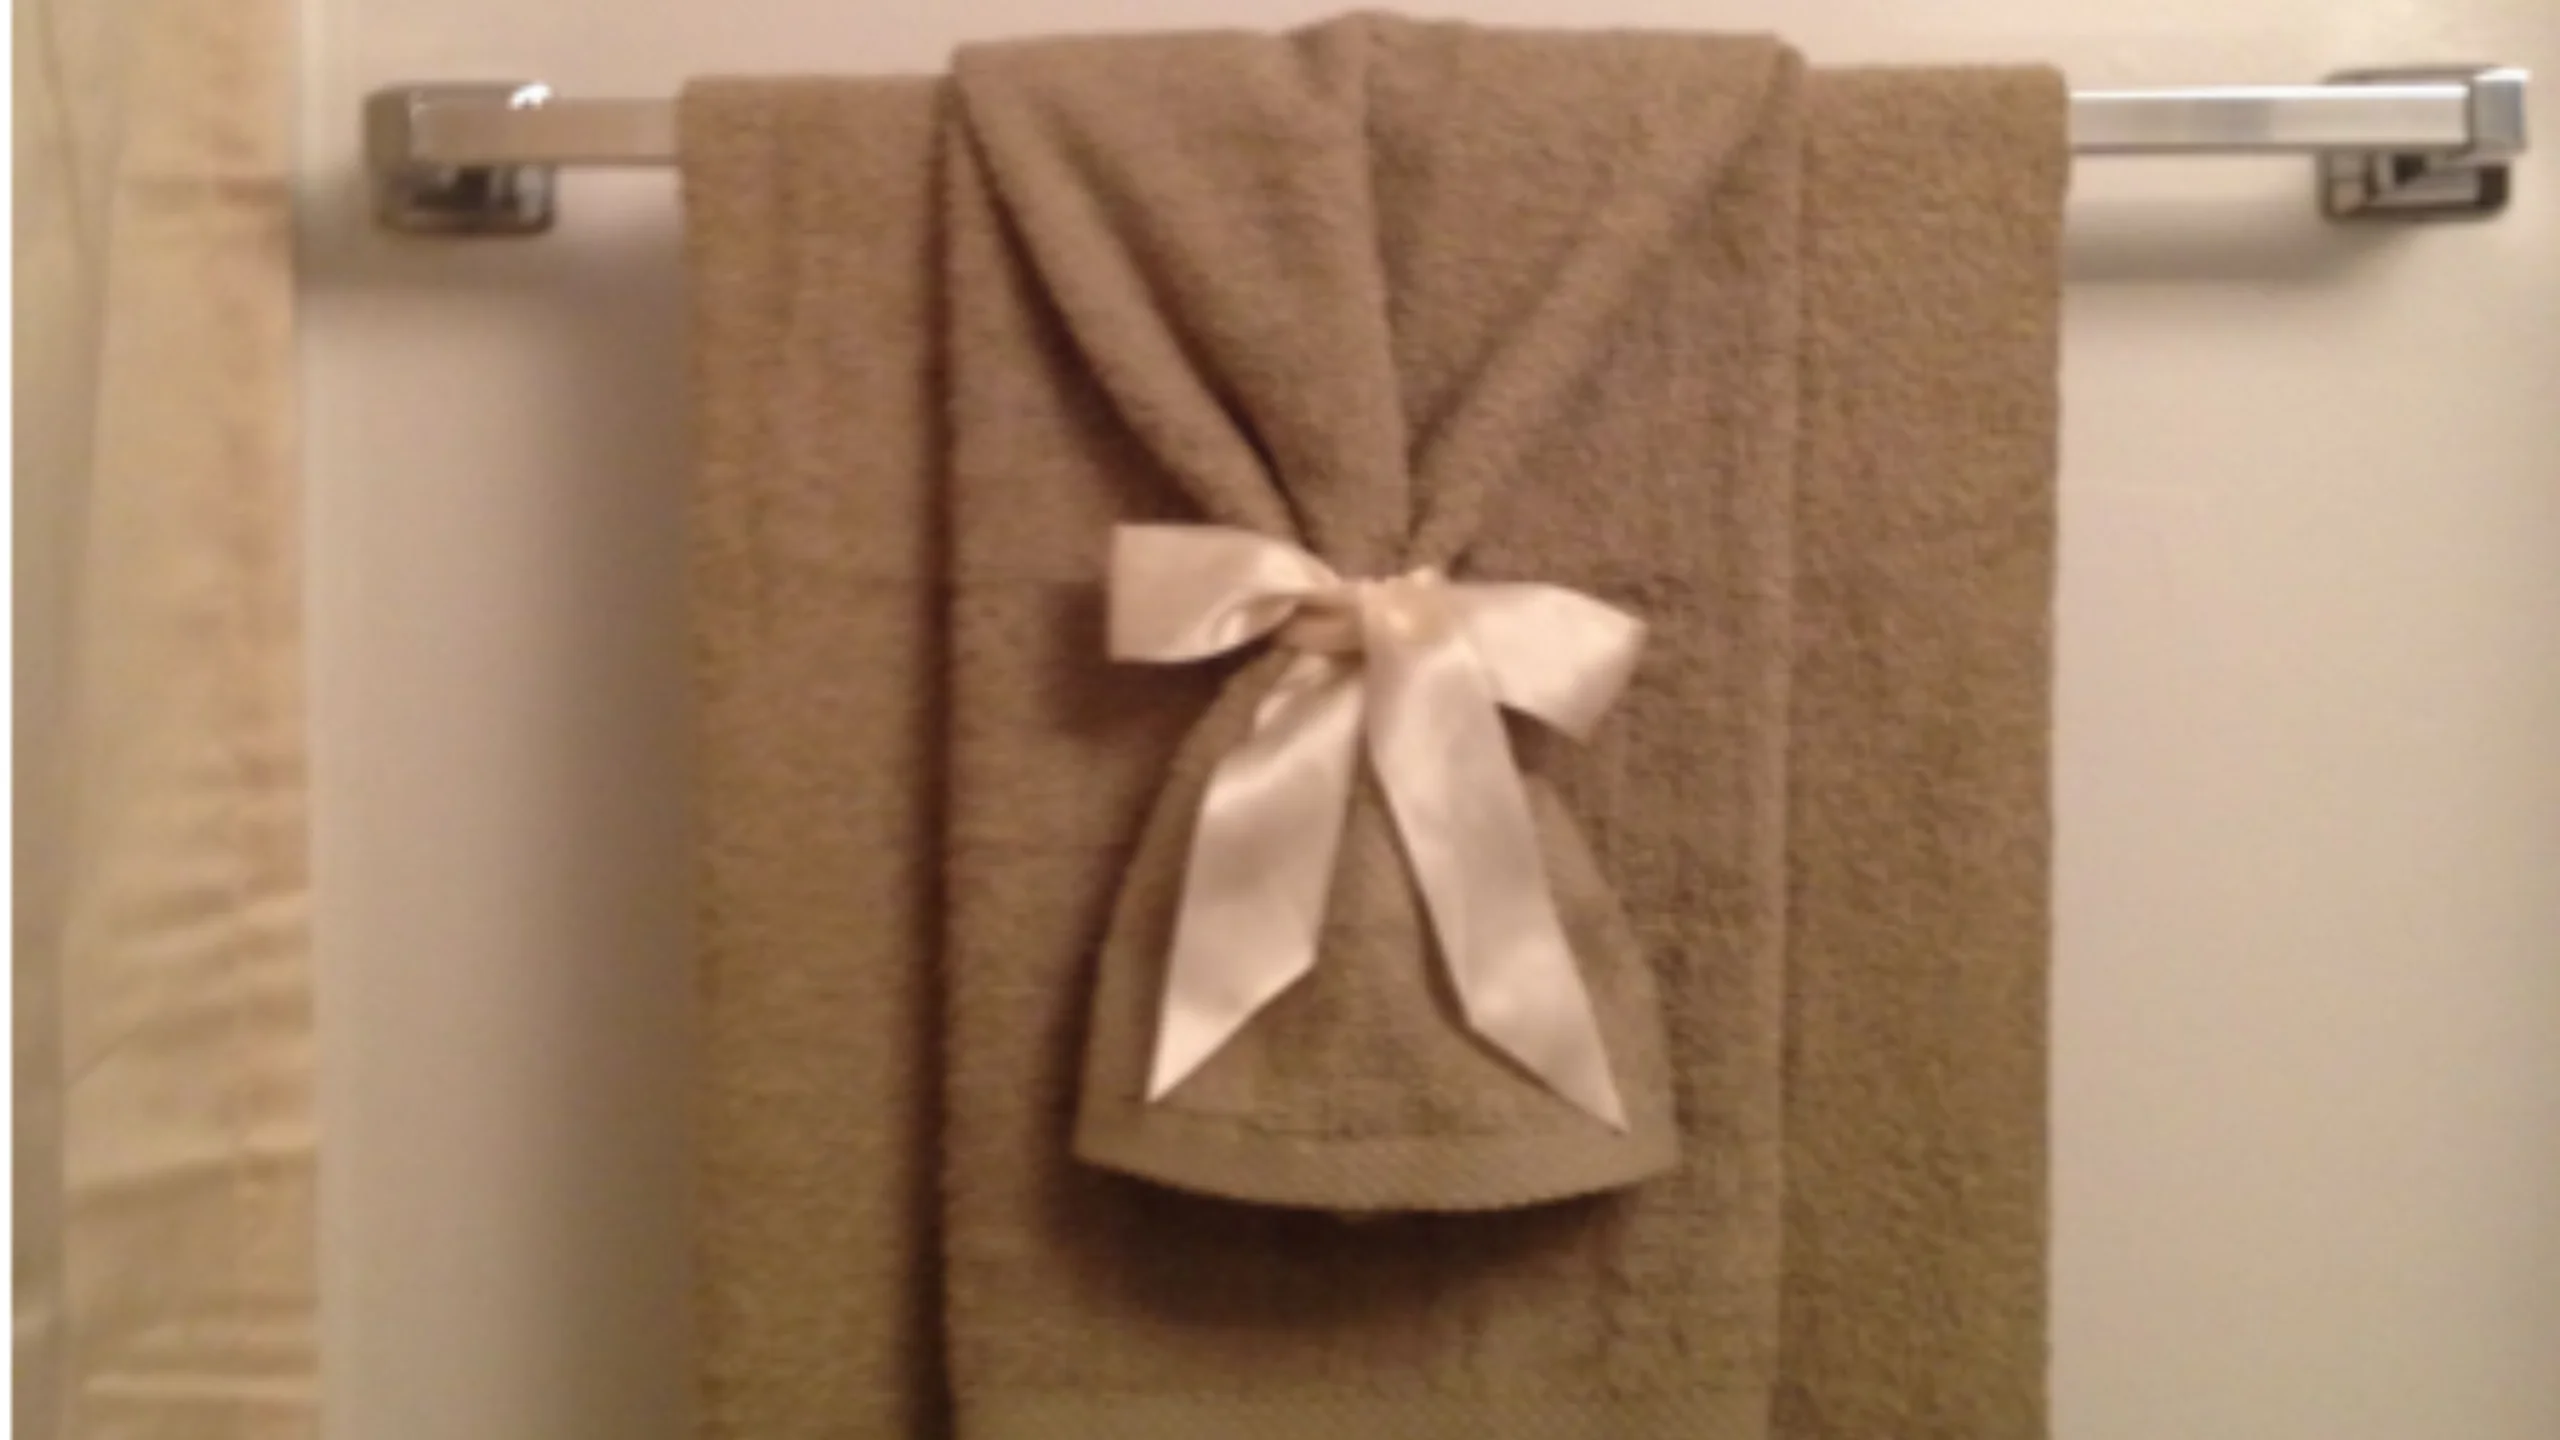 Bathroom towel decor ideas